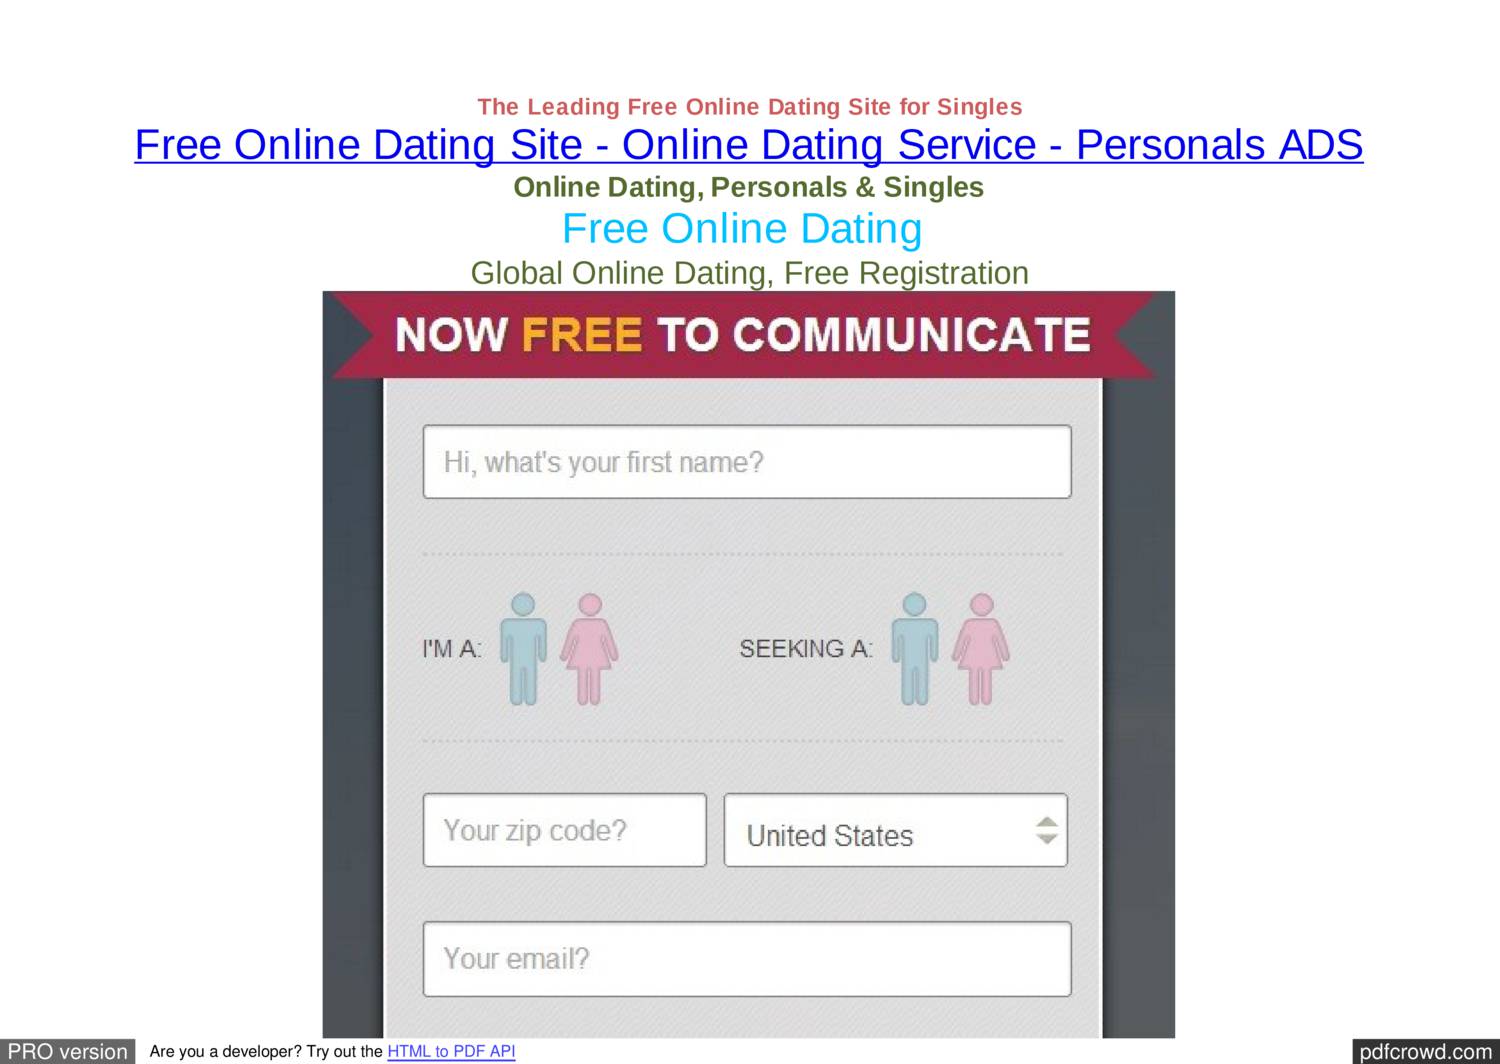 Kenosha dating sites without registration